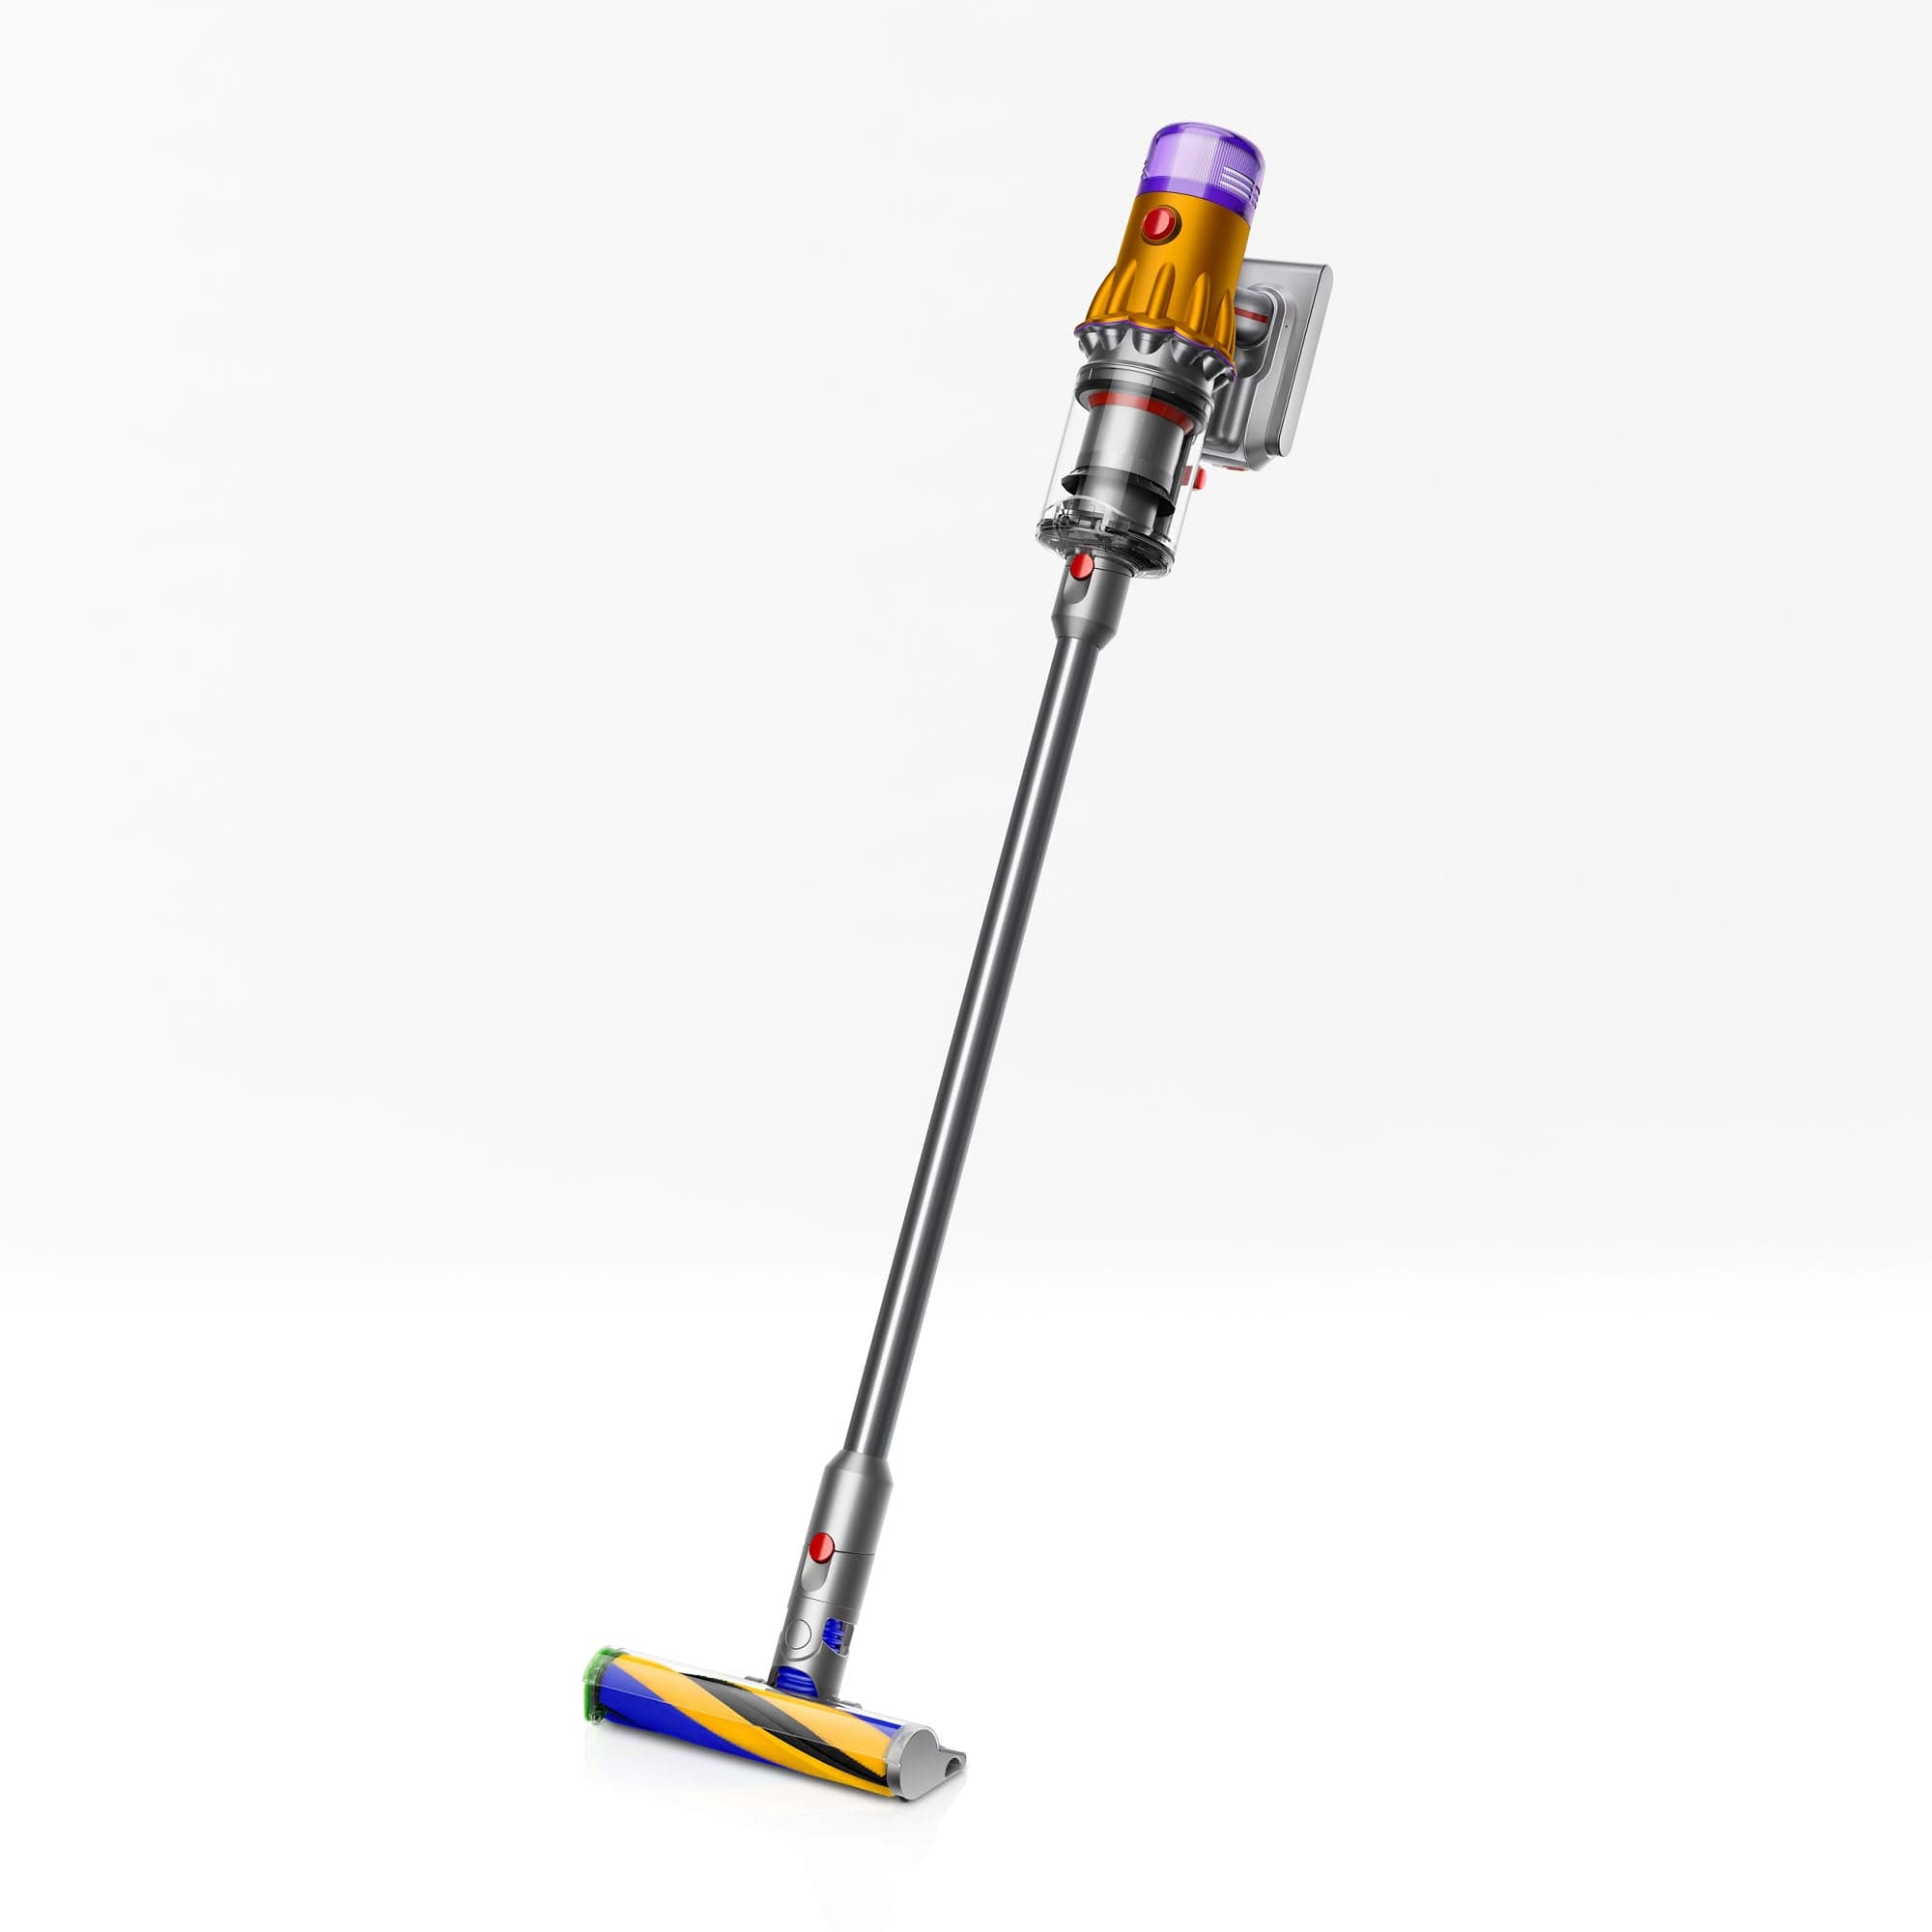 Dyson V12 Detect Slim Absolute Cordless Vacuum